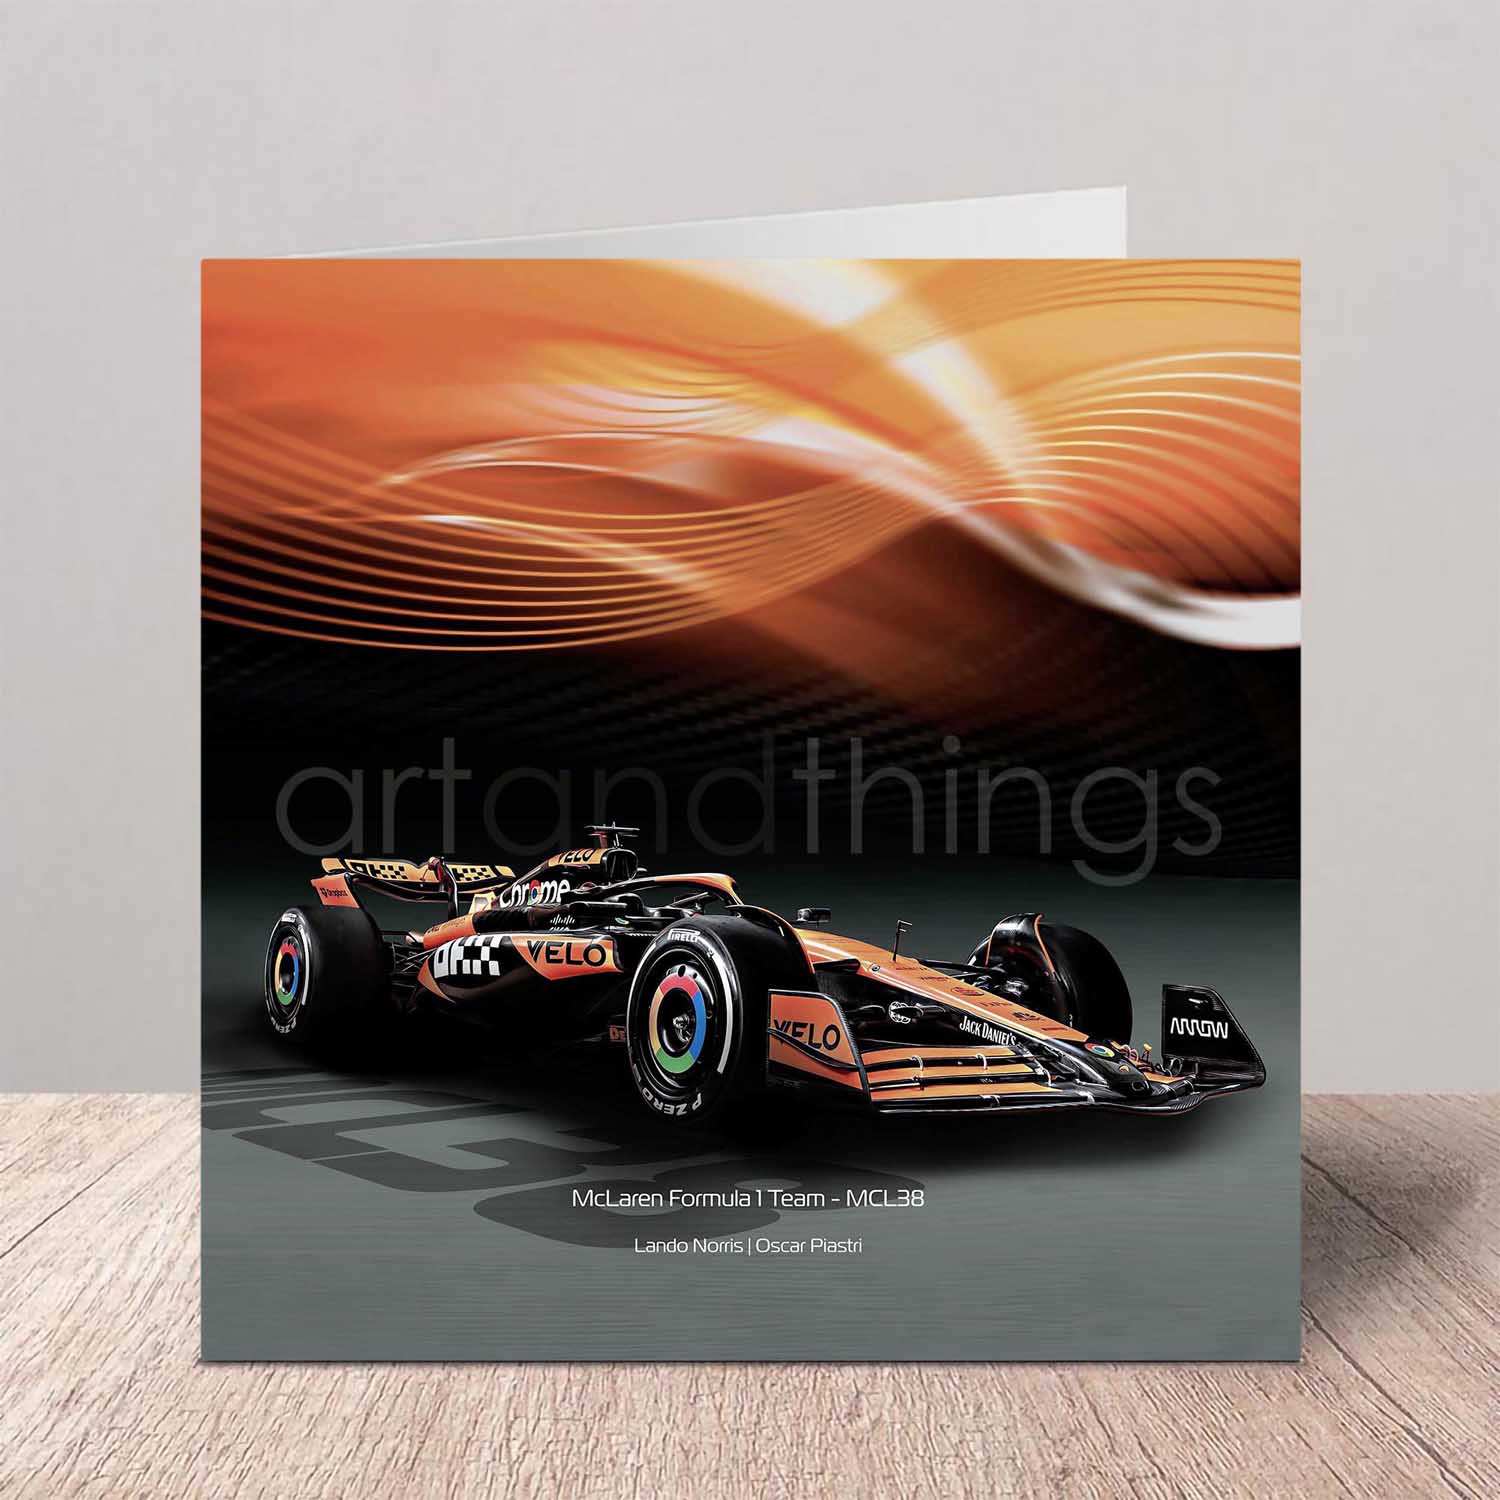 McLaren F1 Car Greeting Card